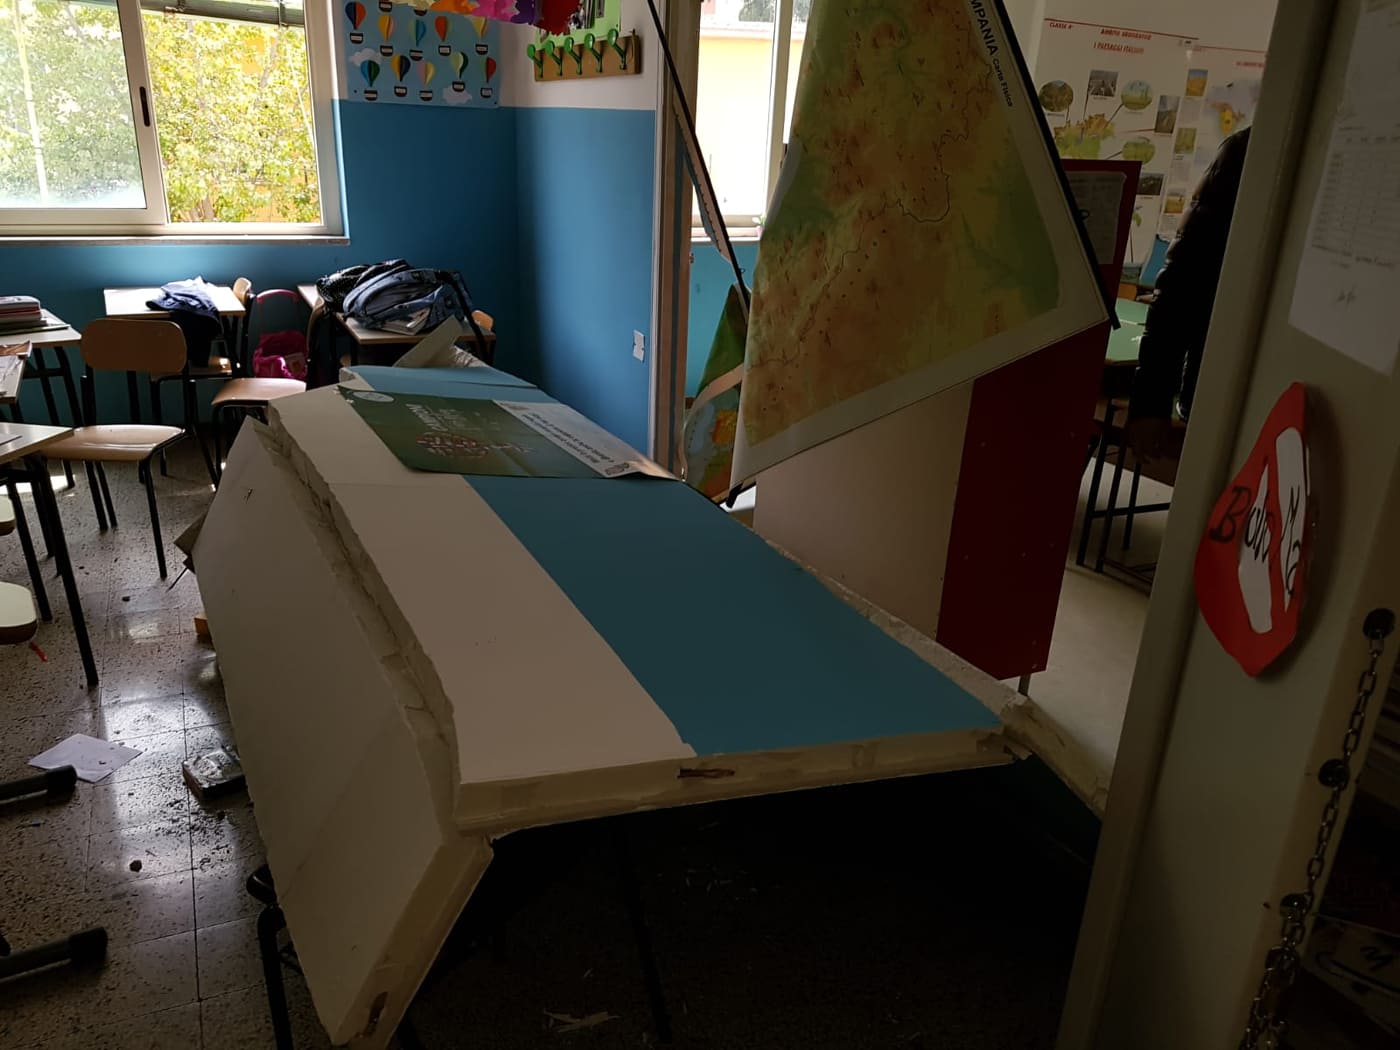 Sant’Anastasia, crolla parete in una scuola: feriti 5 bambini e maestra incinta